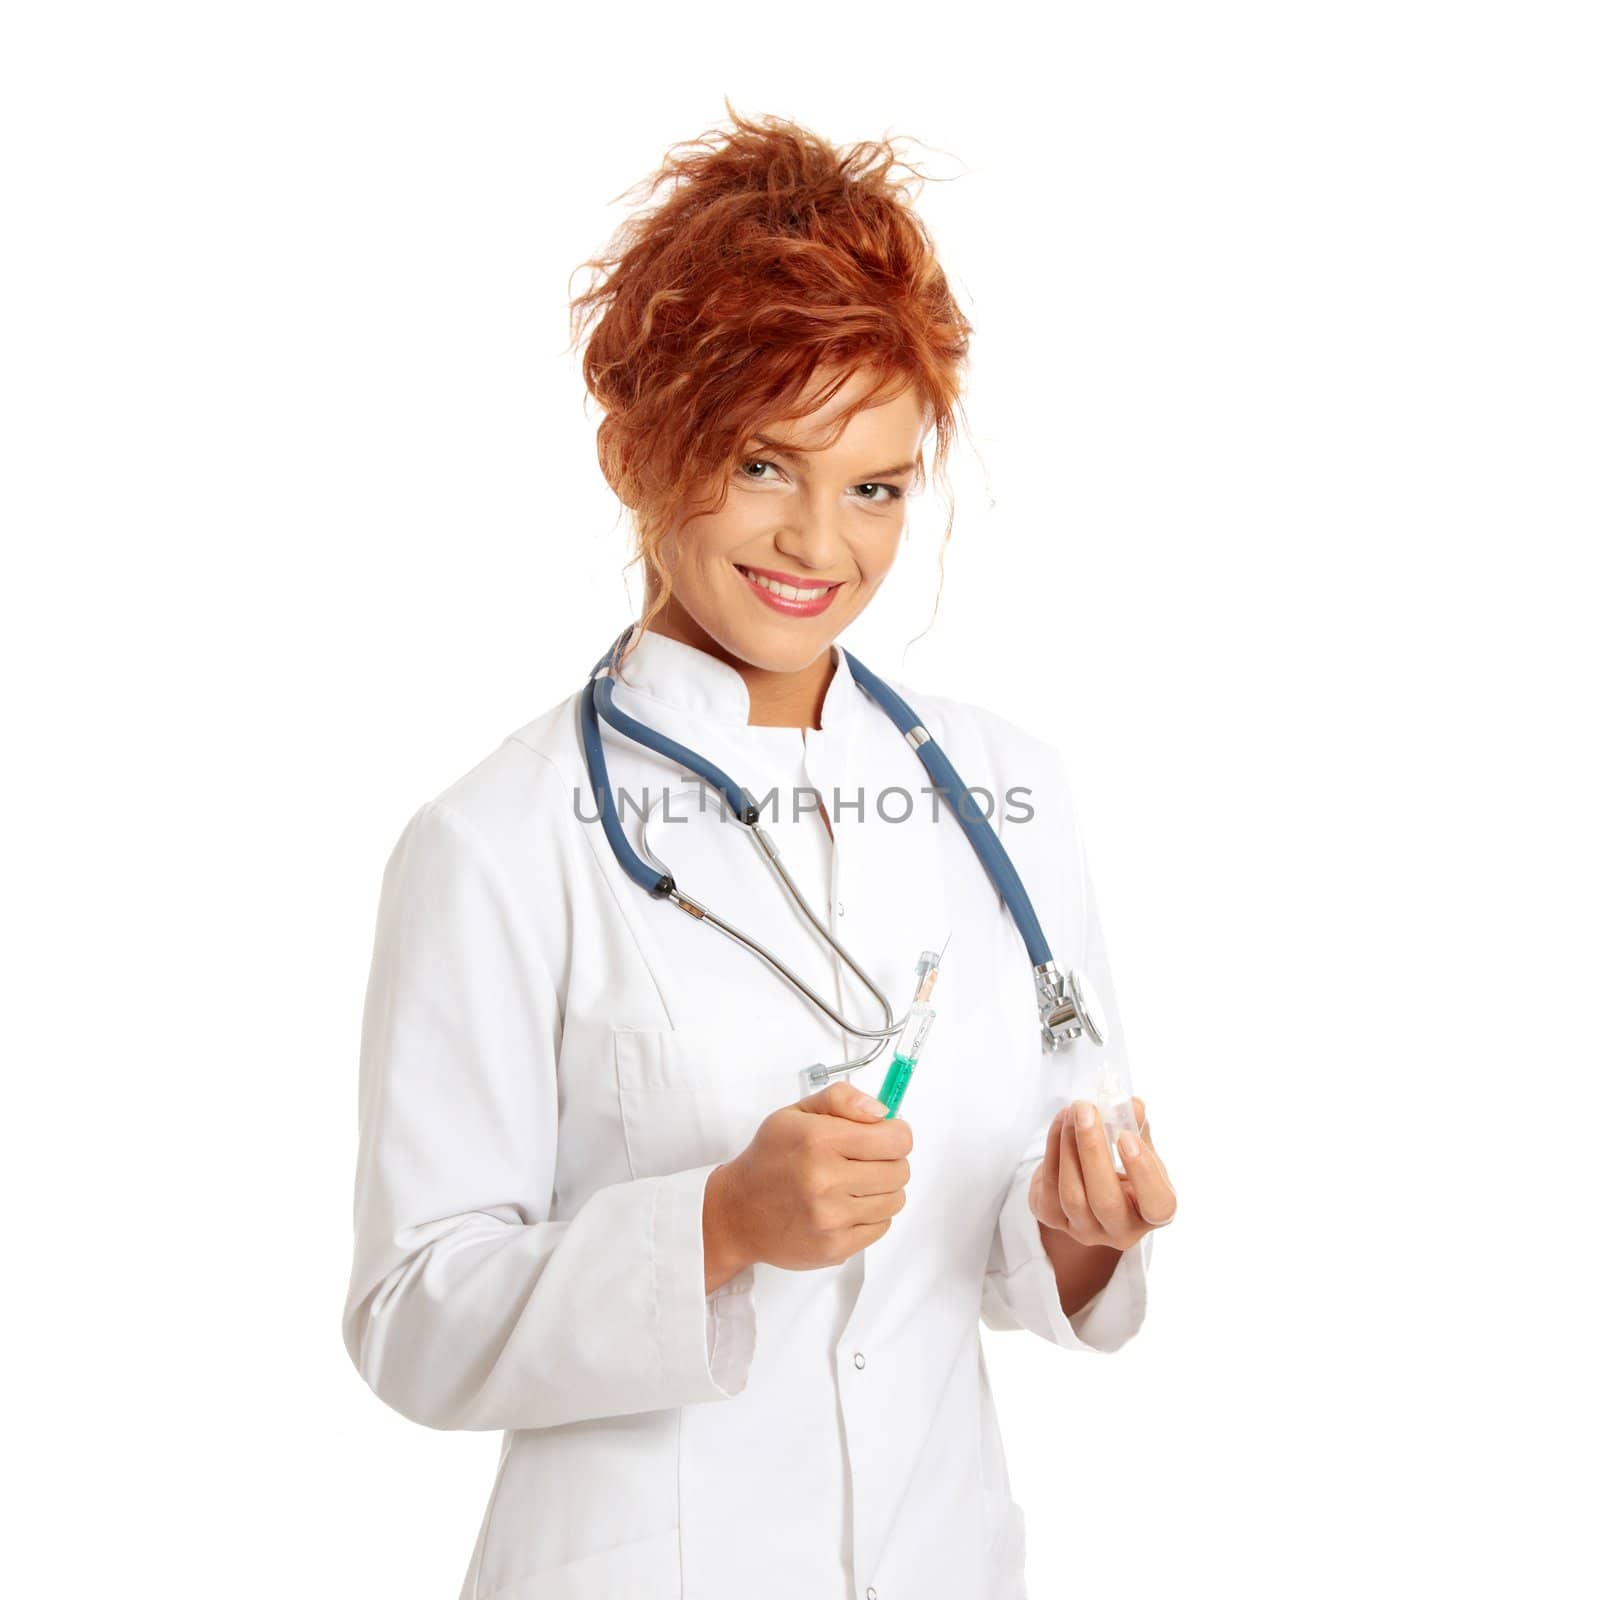 Young female doctor or nurse holding syringe , isolated on white.